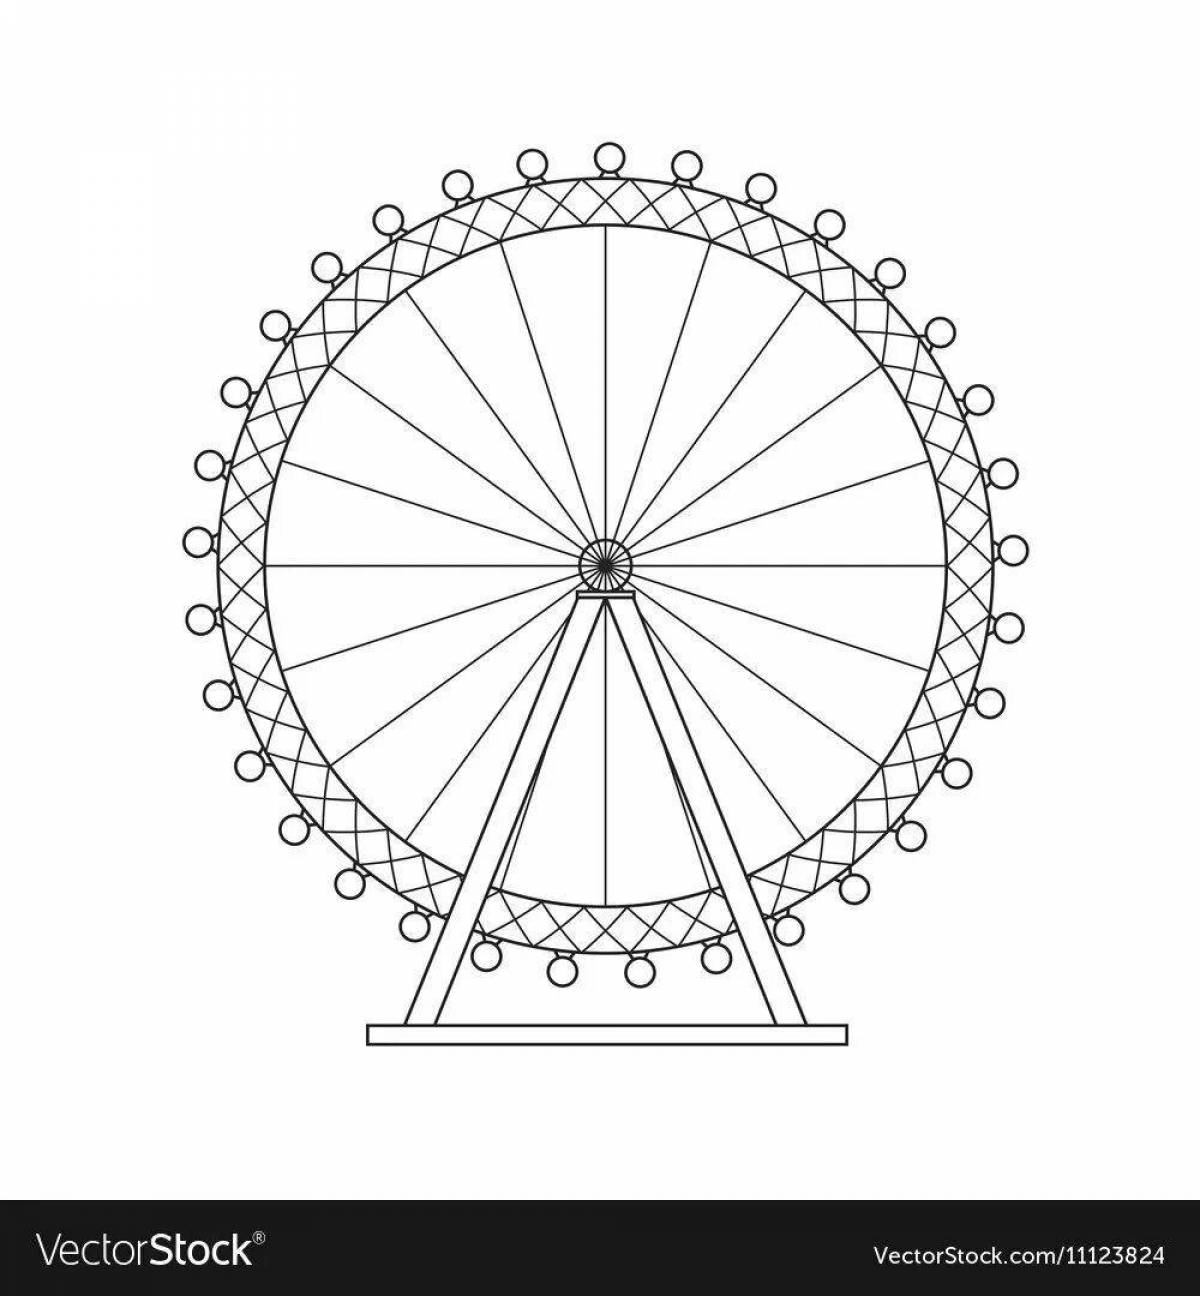 Яркая раскраска колесо обозрения для детей